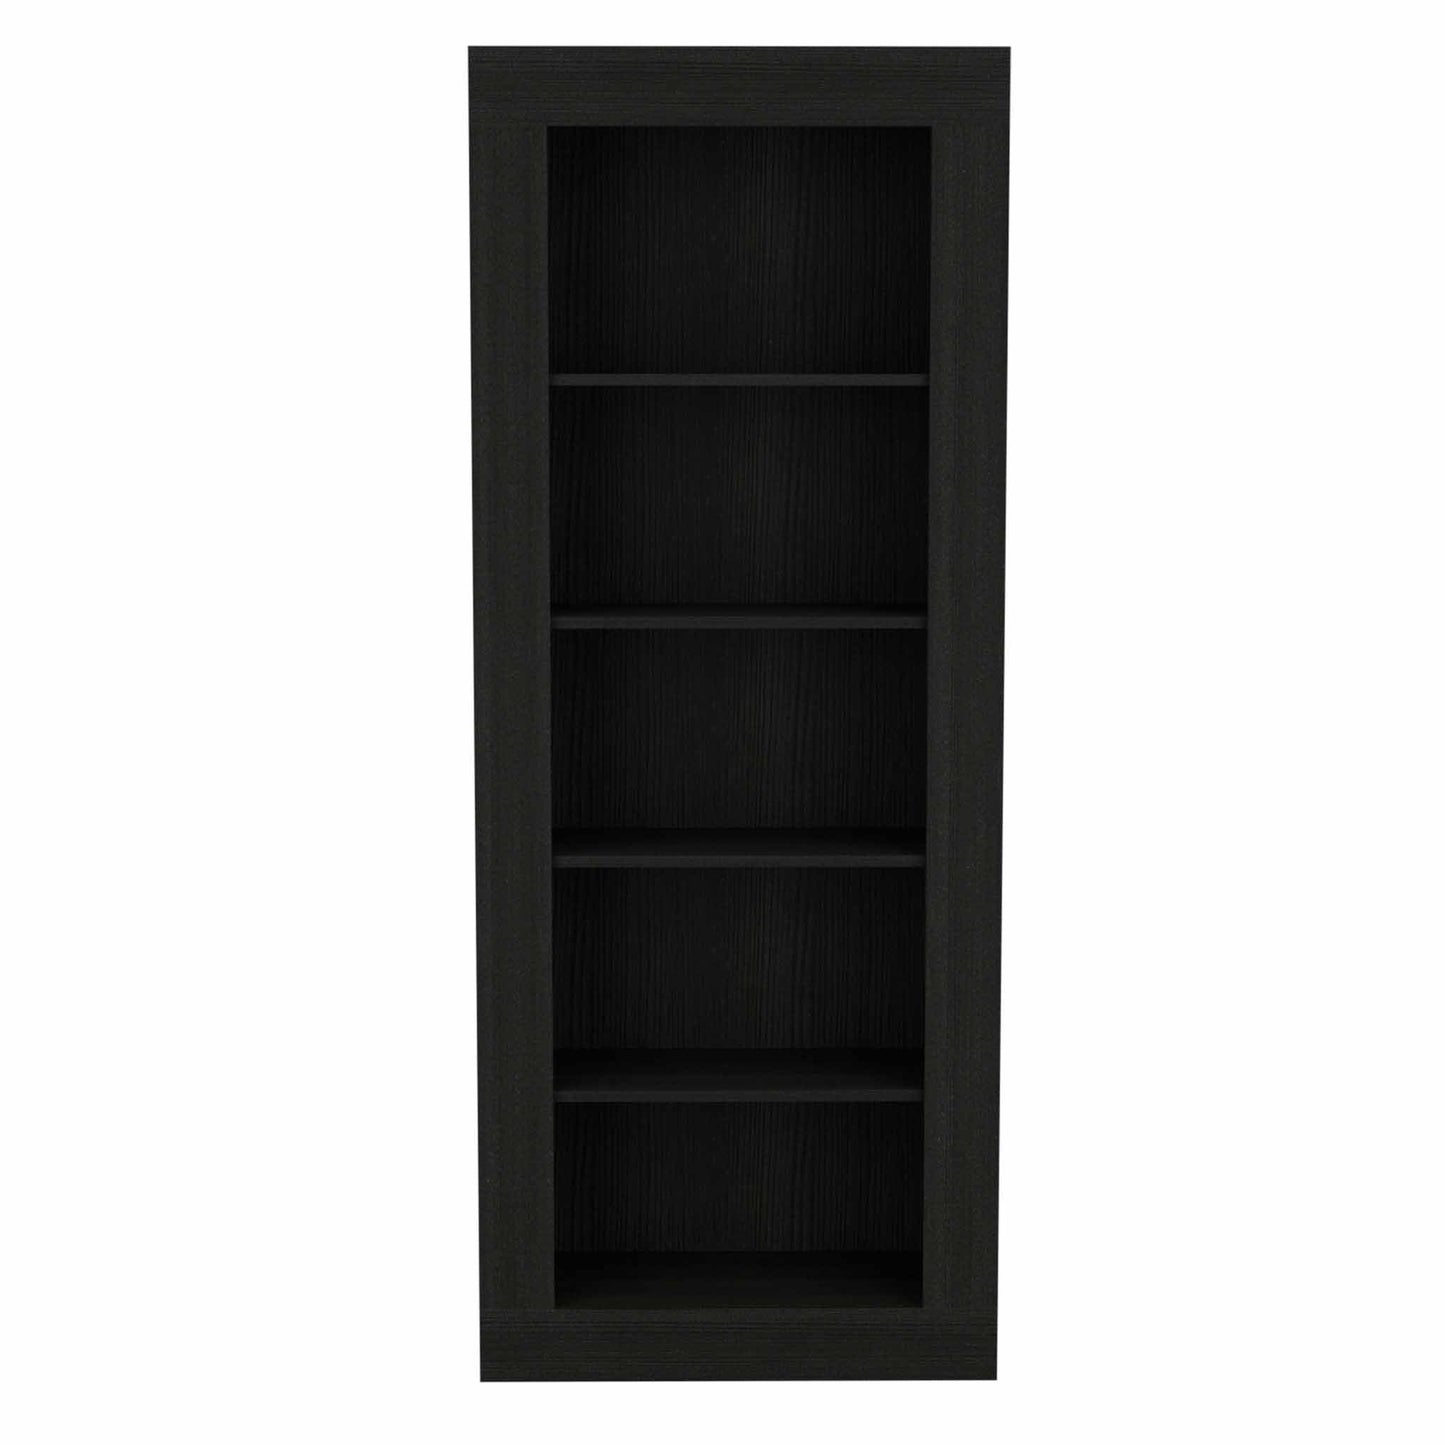 70" Black Five Tier Bookcase